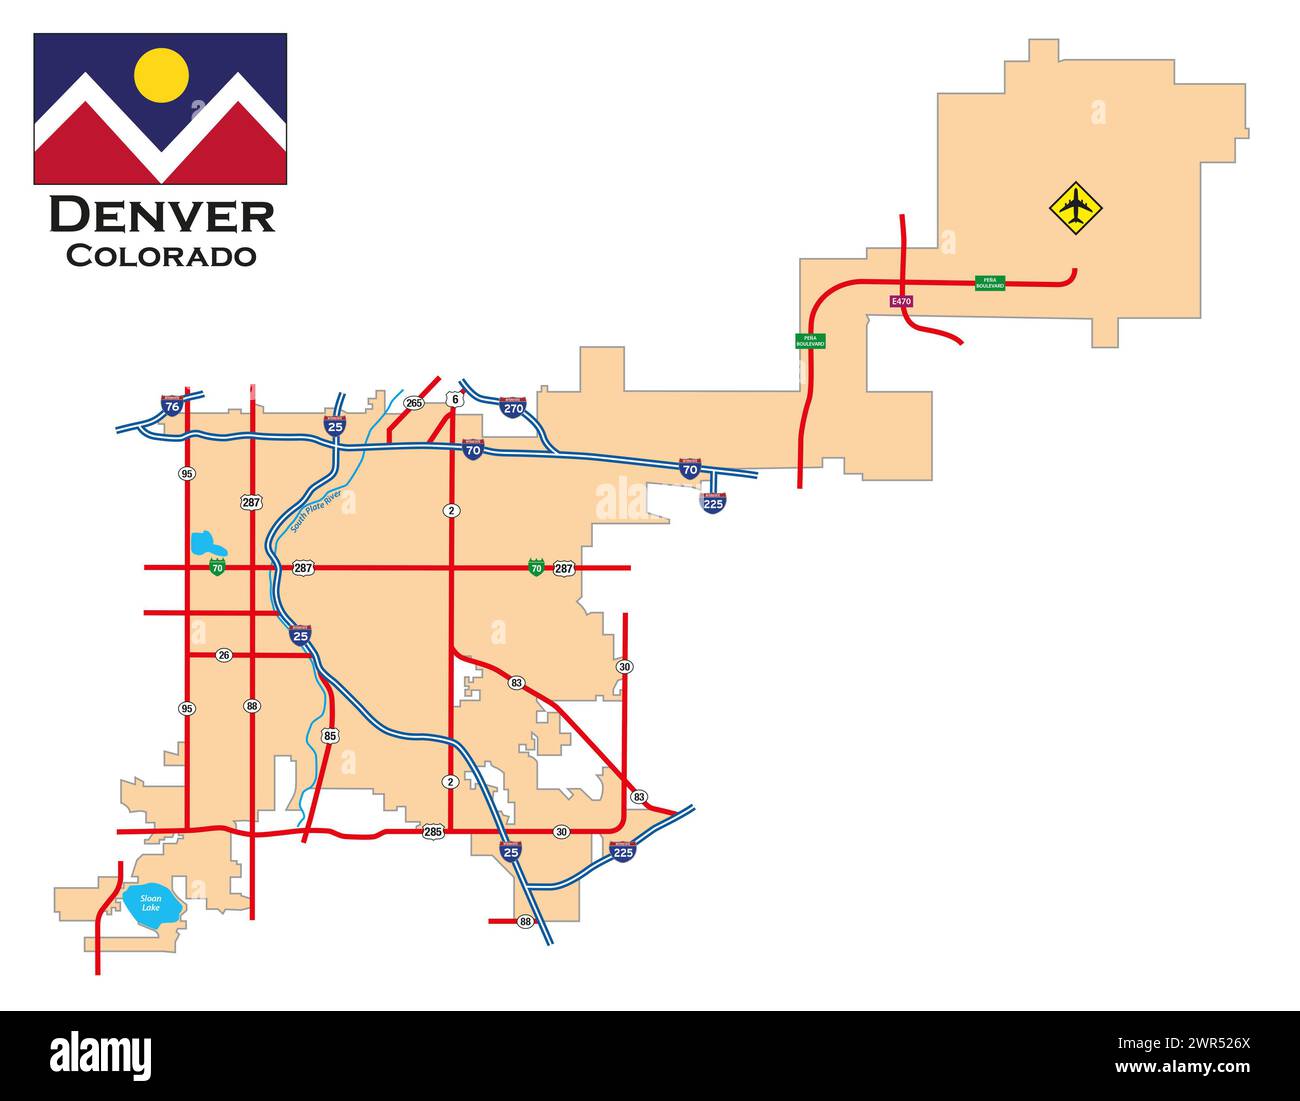 Simple city map of Denver, Colorado, USA Stock Photo